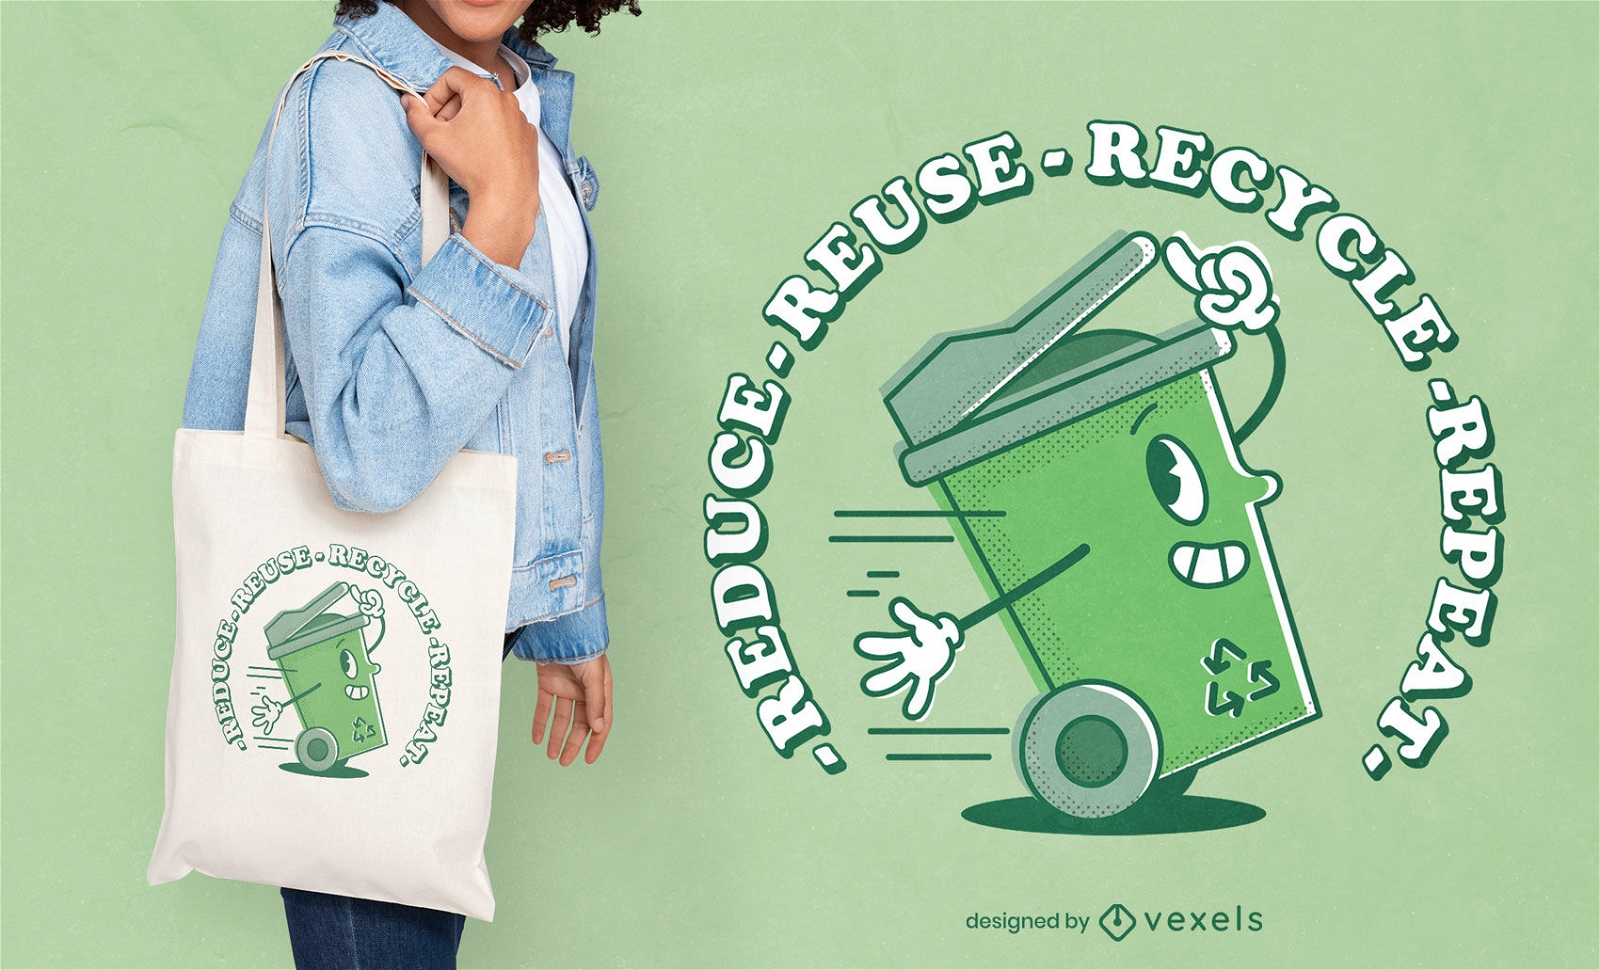 Design de sacola recicl?vel ecologicamente correta